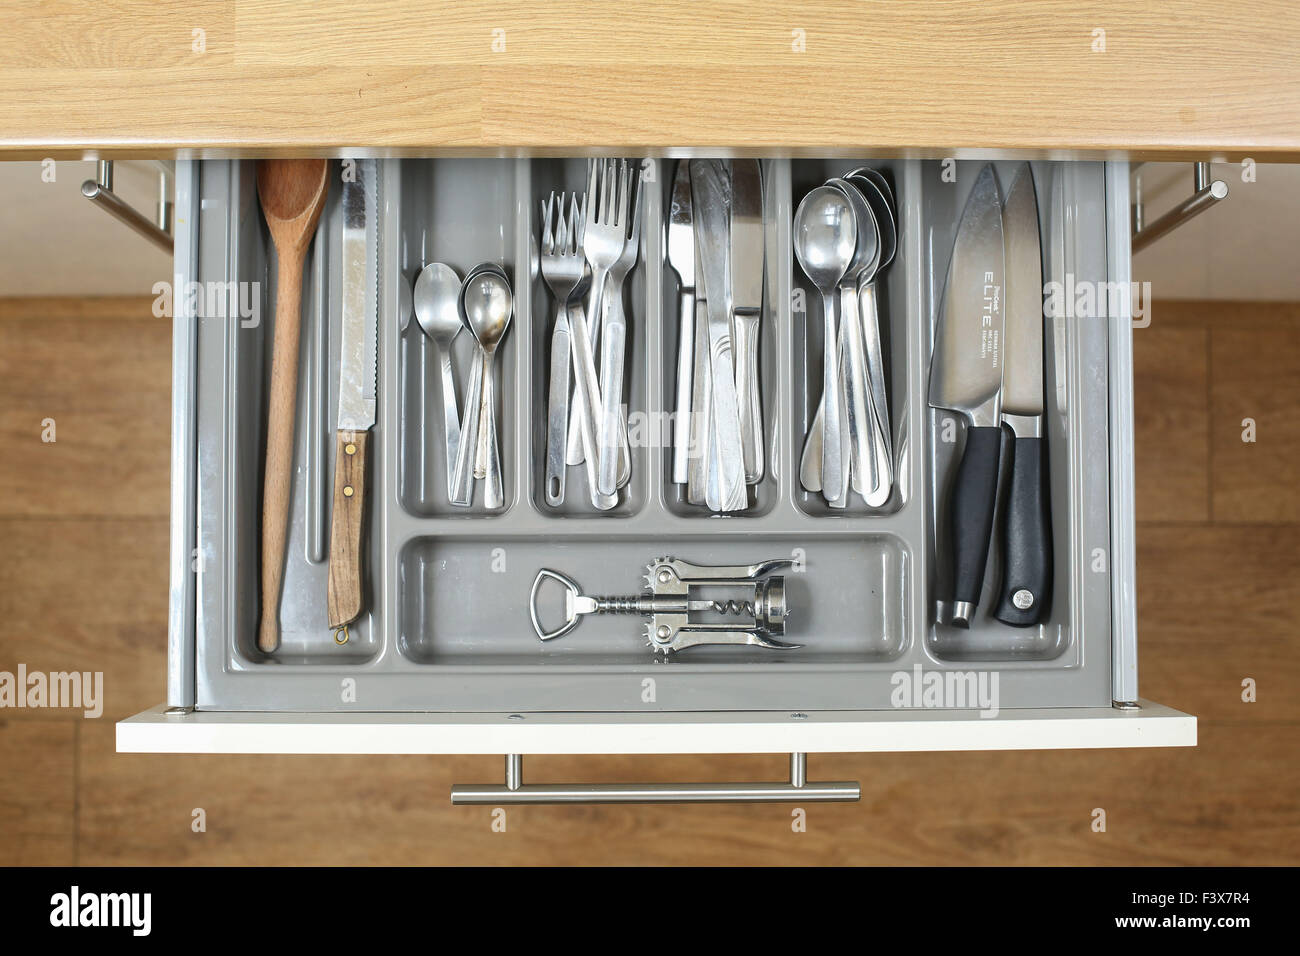 Una cocina cajón lleno de todos los cubiertos, los cuchillos y los utensilios necesarios para cocinar encima de una tormenta. Foto de stock